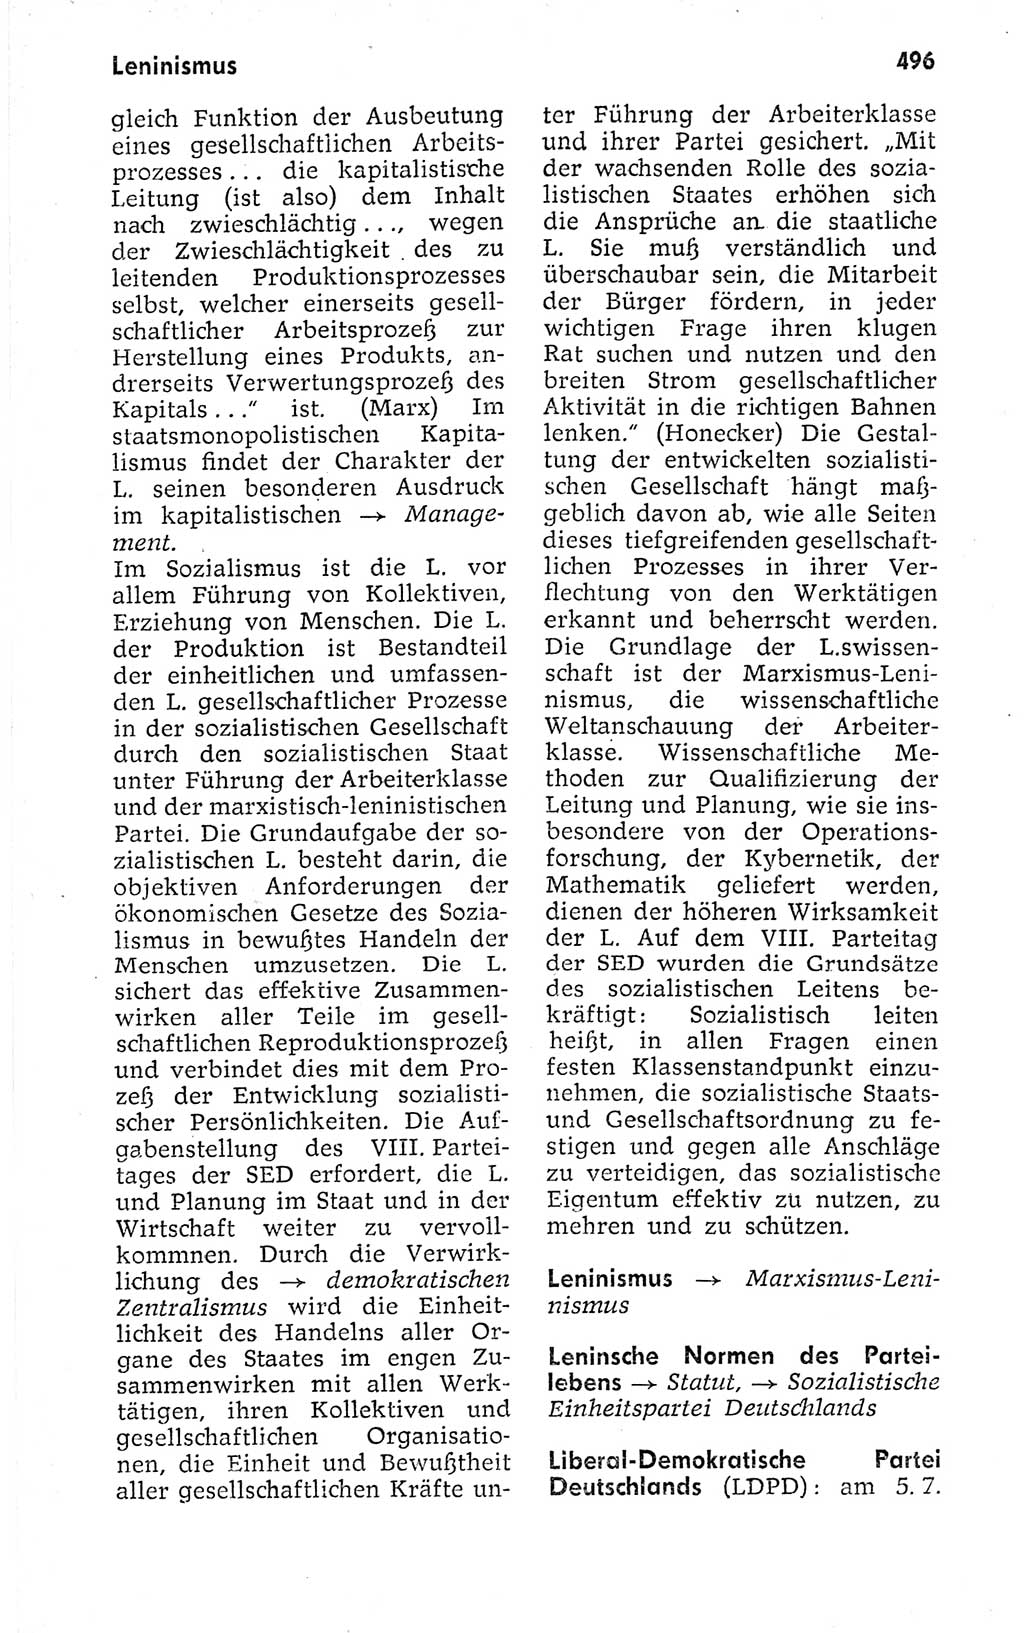 Kleines politisches Wörterbuch [Deutsche Demokratische Republik (DDR)] 1973, Seite 496 (Kl. pol. Wb. DDR 1973, S. 496)